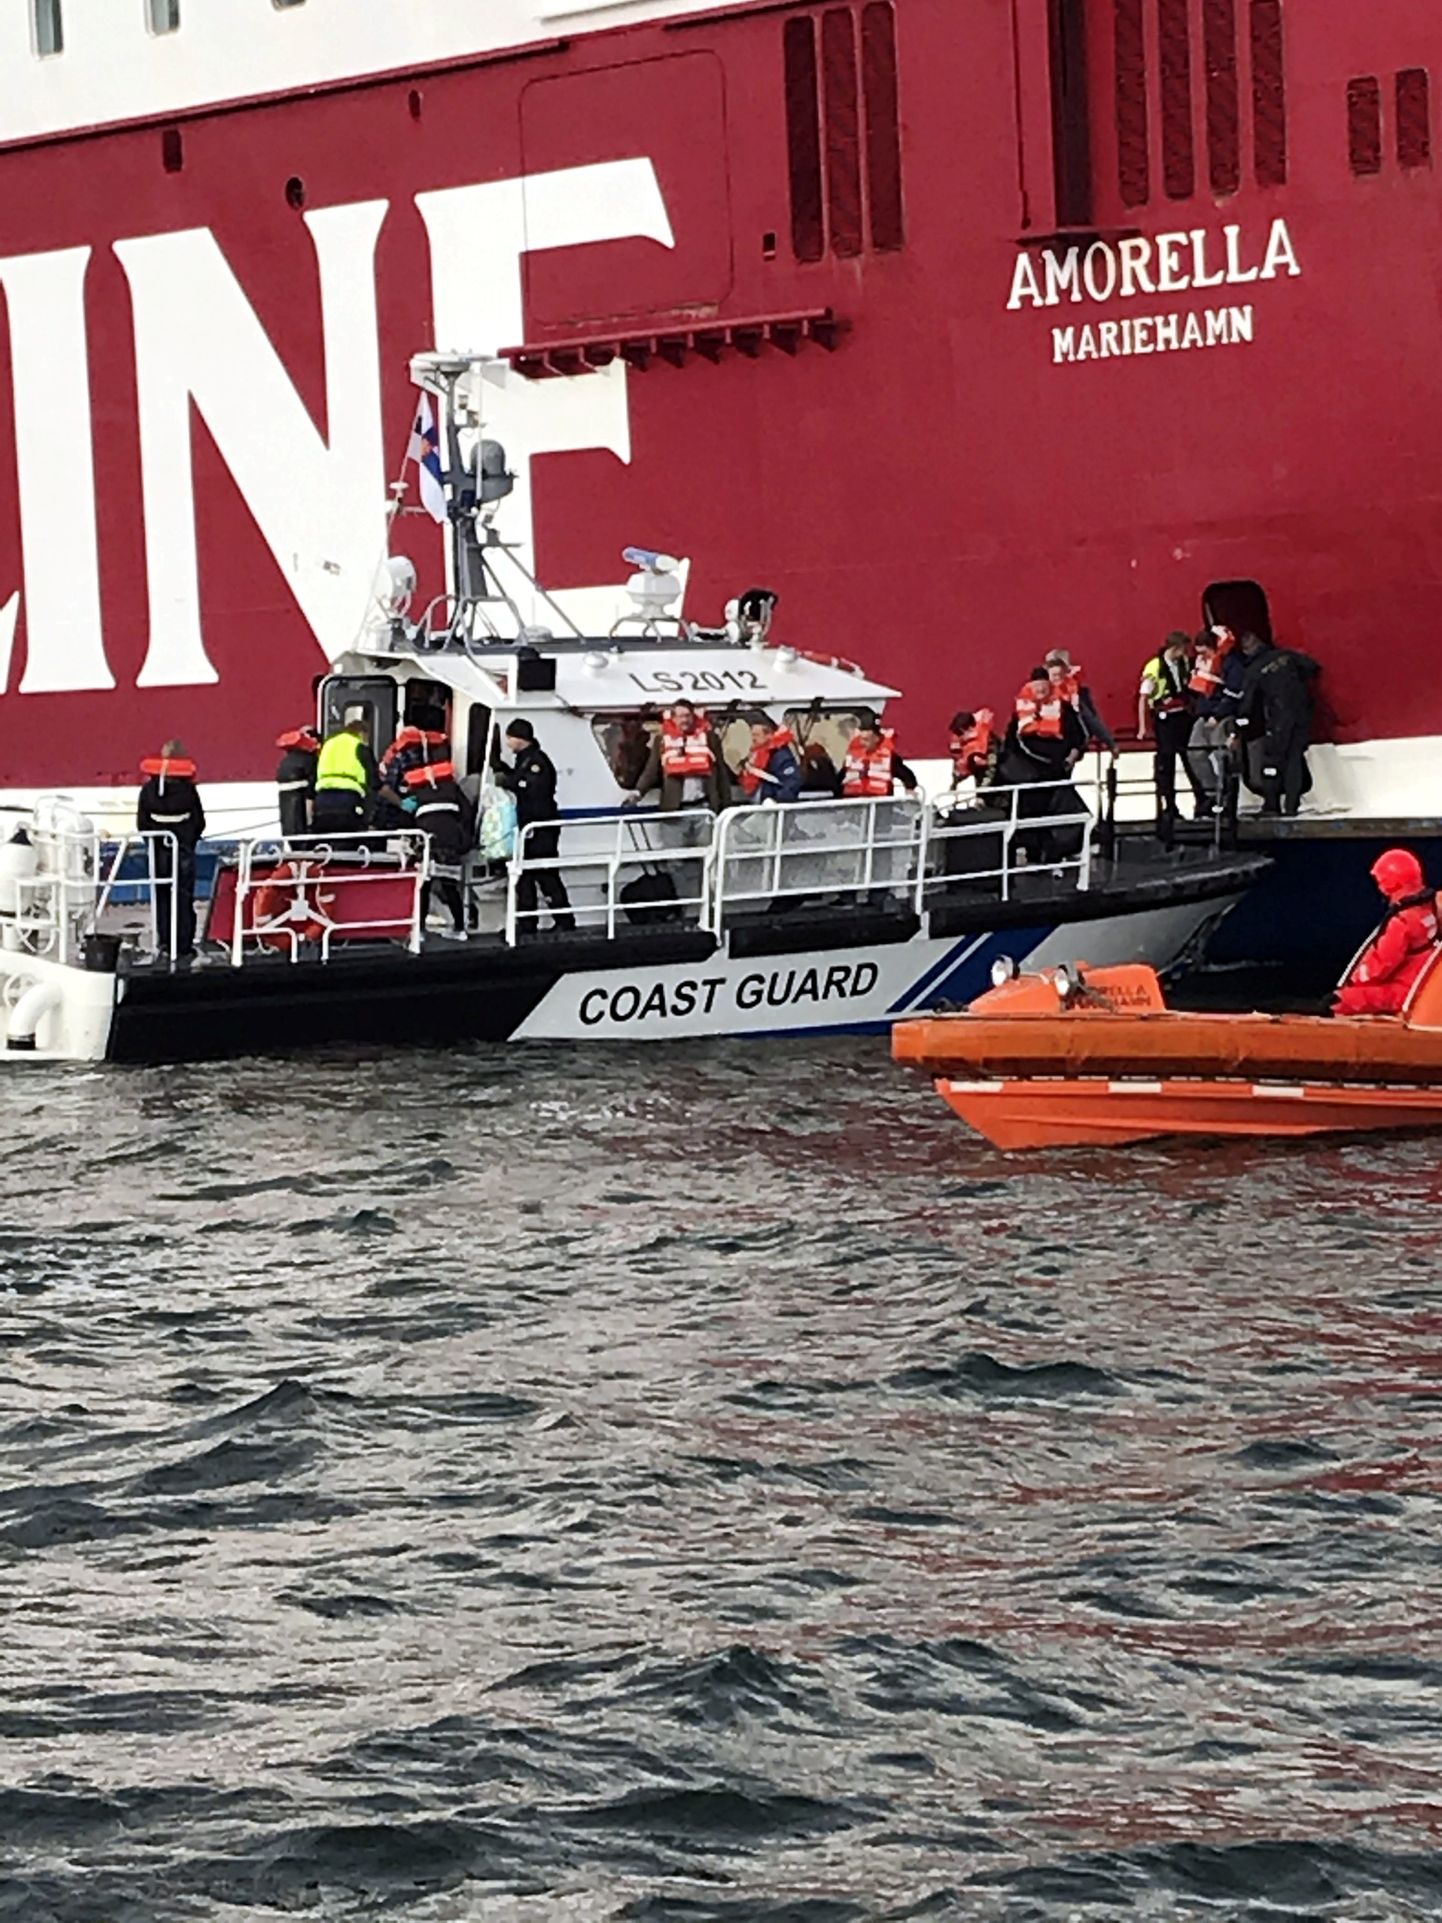 Reisijad evakueeriti eile laevalt Soome piirivalve ja merepäästjate väikeste paatidega ning kaasa võis võtta vaid väiksemad isiklikud asjad.